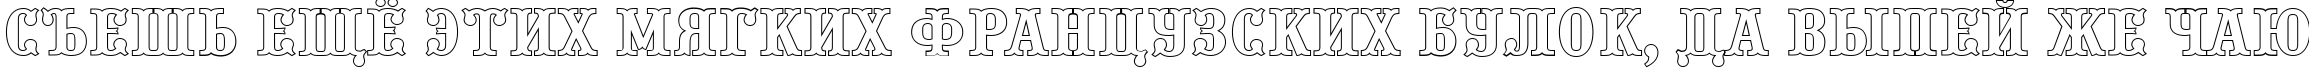 Пример написания шрифтом a_PresentumOtl текста на русском